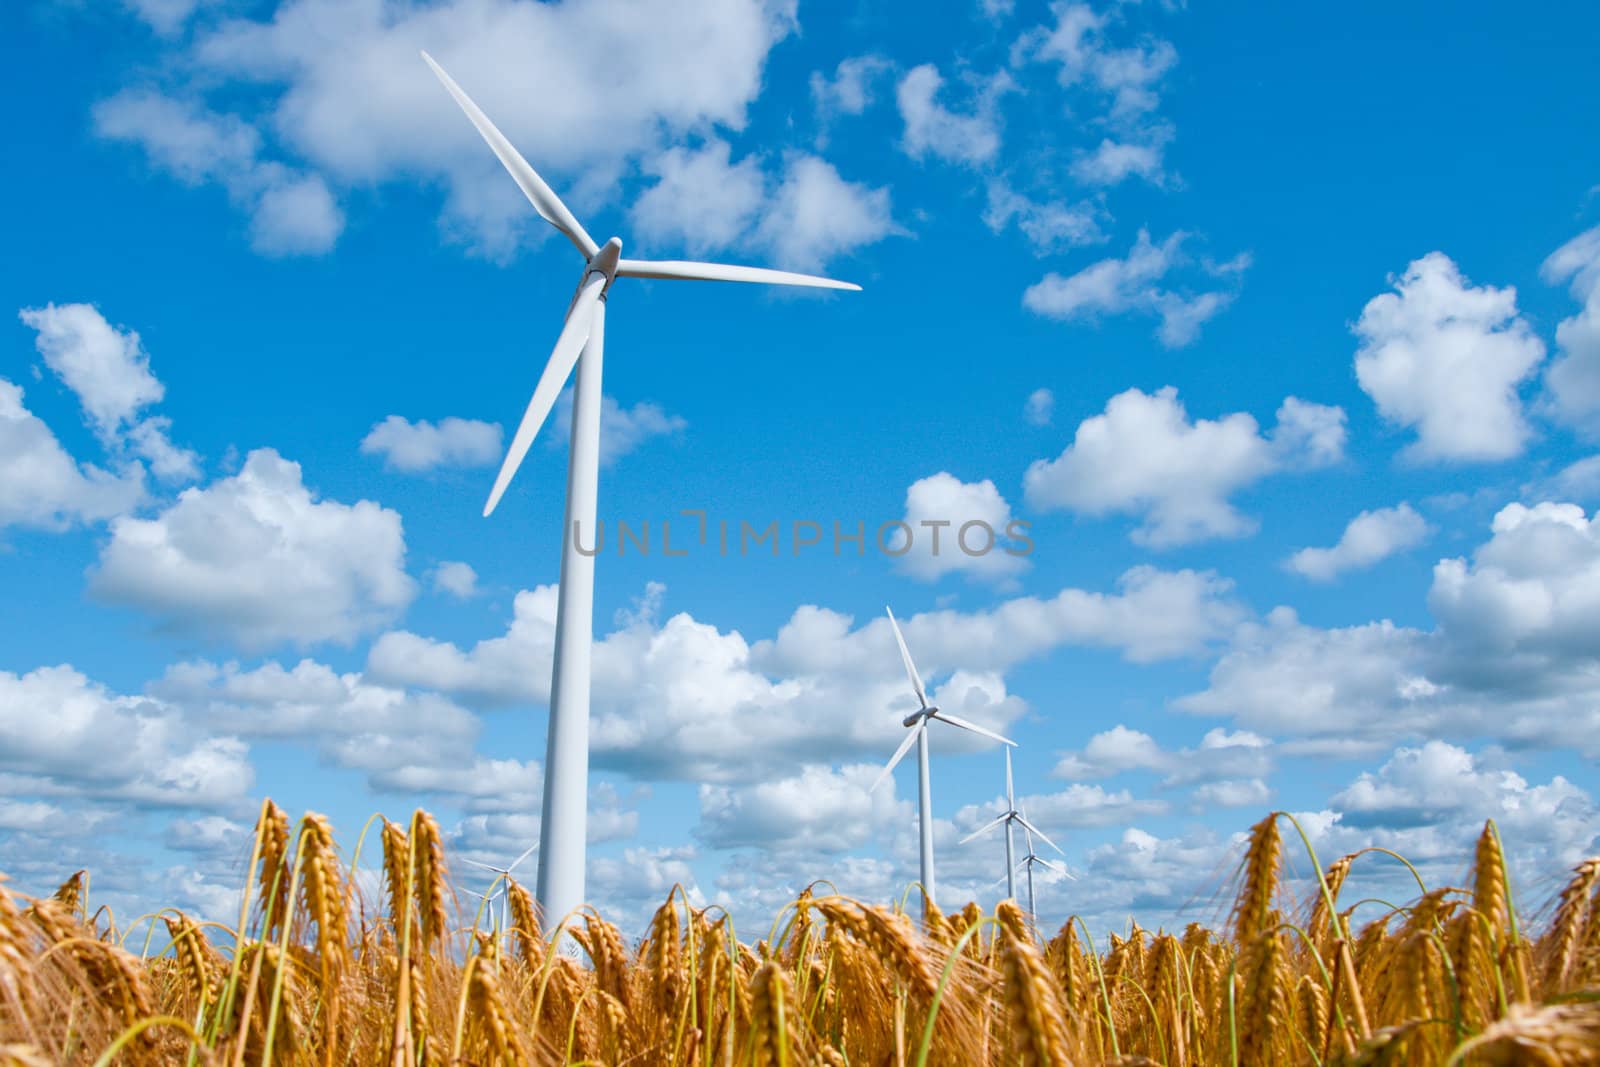 wind turbine in wheat field by filmstroem